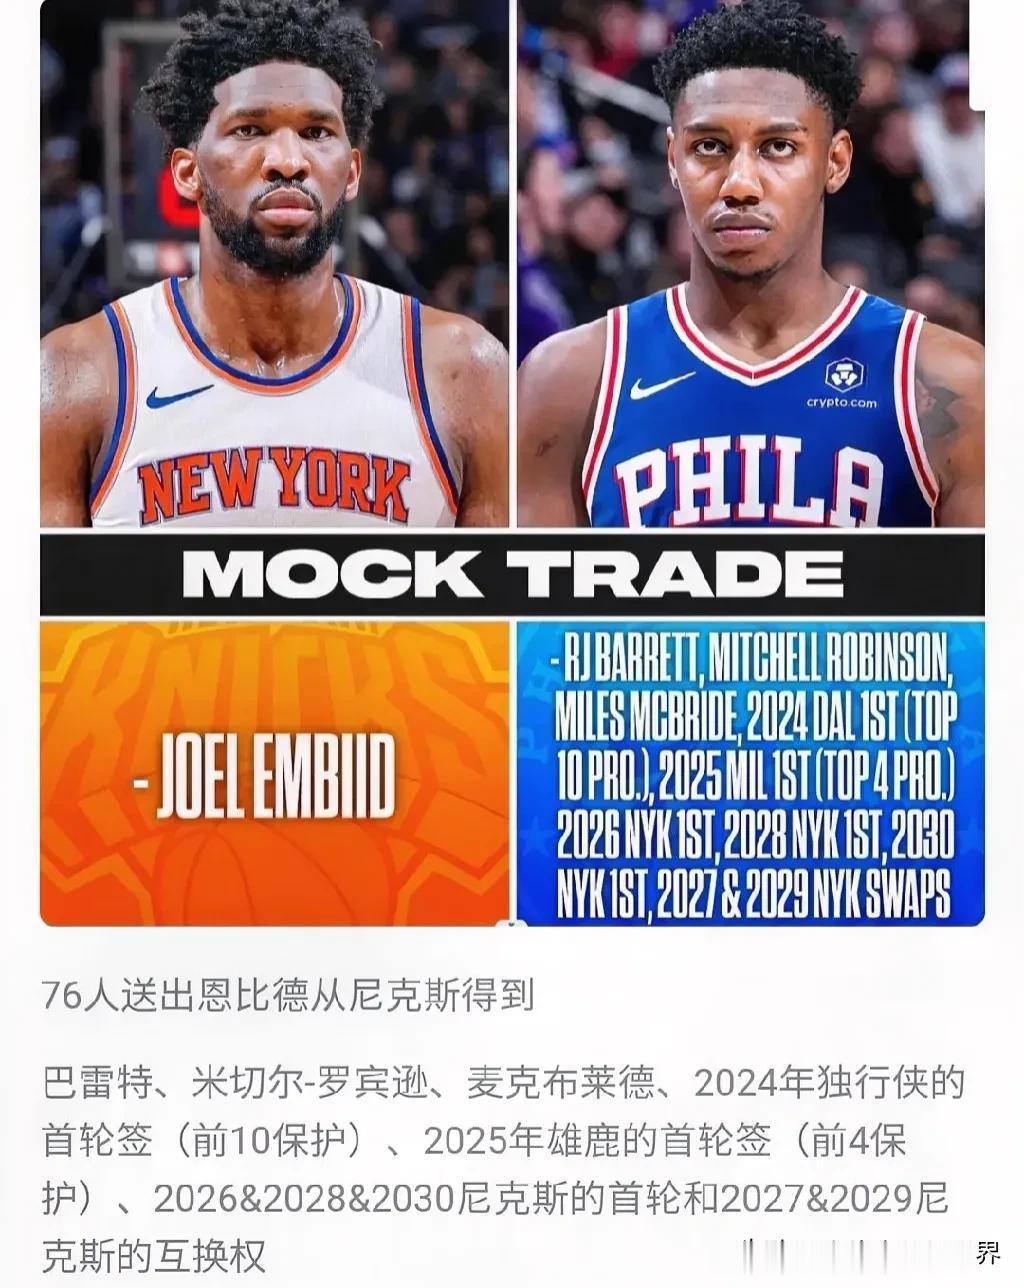 北京时间7月24日美国媒体ESPN提出一笔大胆交易奢想:NBA76人队管理层完全(1)